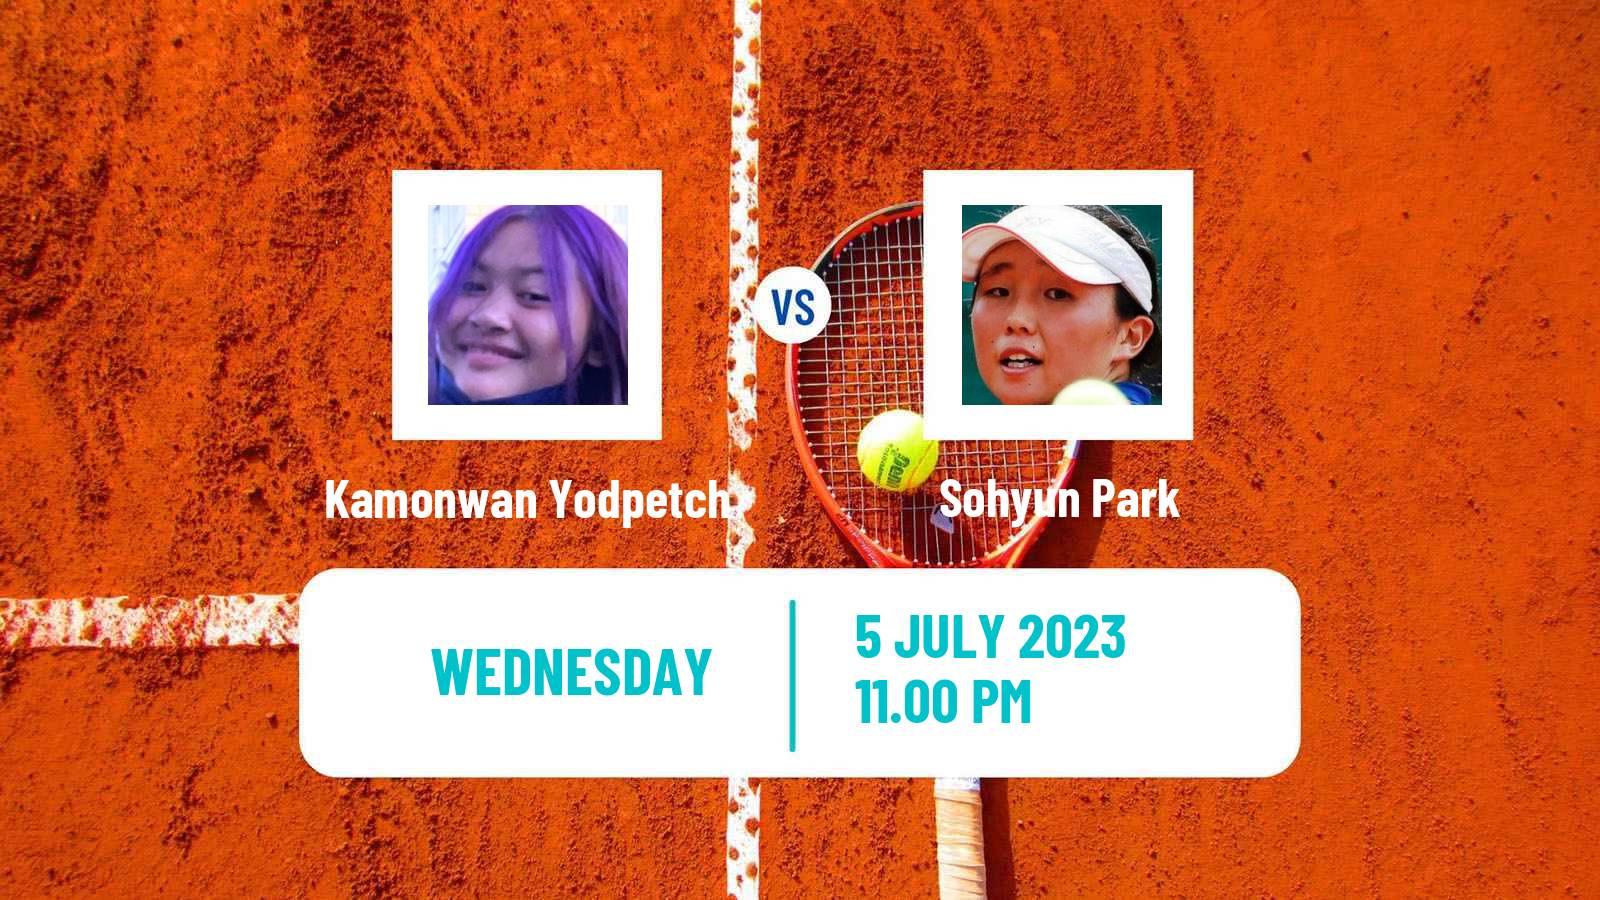 Tennis ITF W25 Nakhon Si Thammarat 2 Women Kamonwan Yodpetch - Sohyun Park